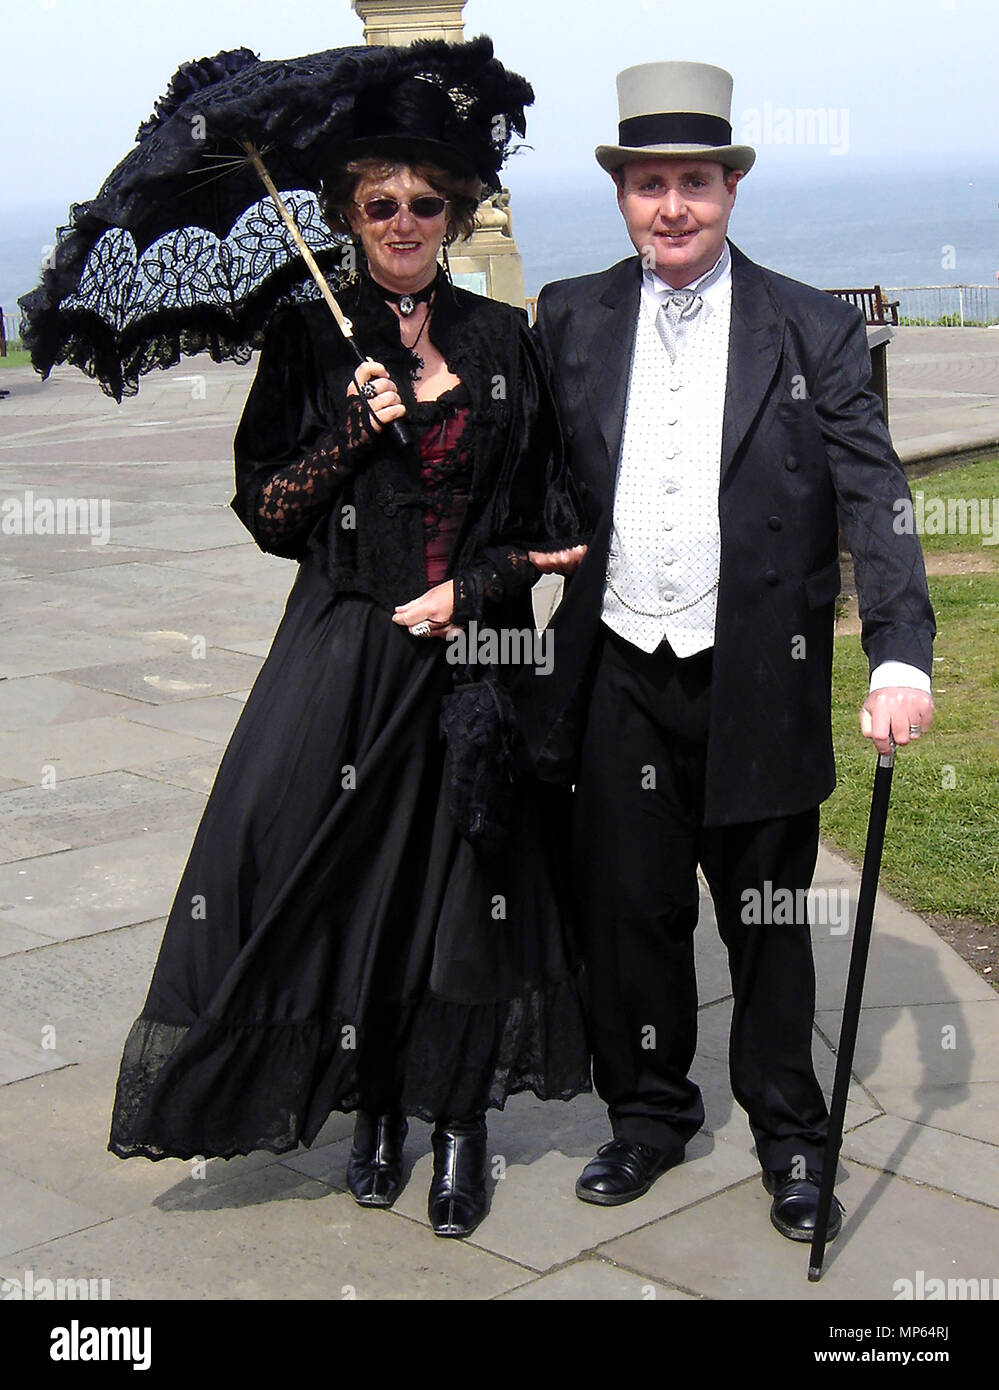 Élégance - pas tous les goths sont bizarrement vêtus au cours de l'assemblée annuelle du festival gothique à Whitby, dans le Yorkshire au Royaume-Uni. Banque D'Images